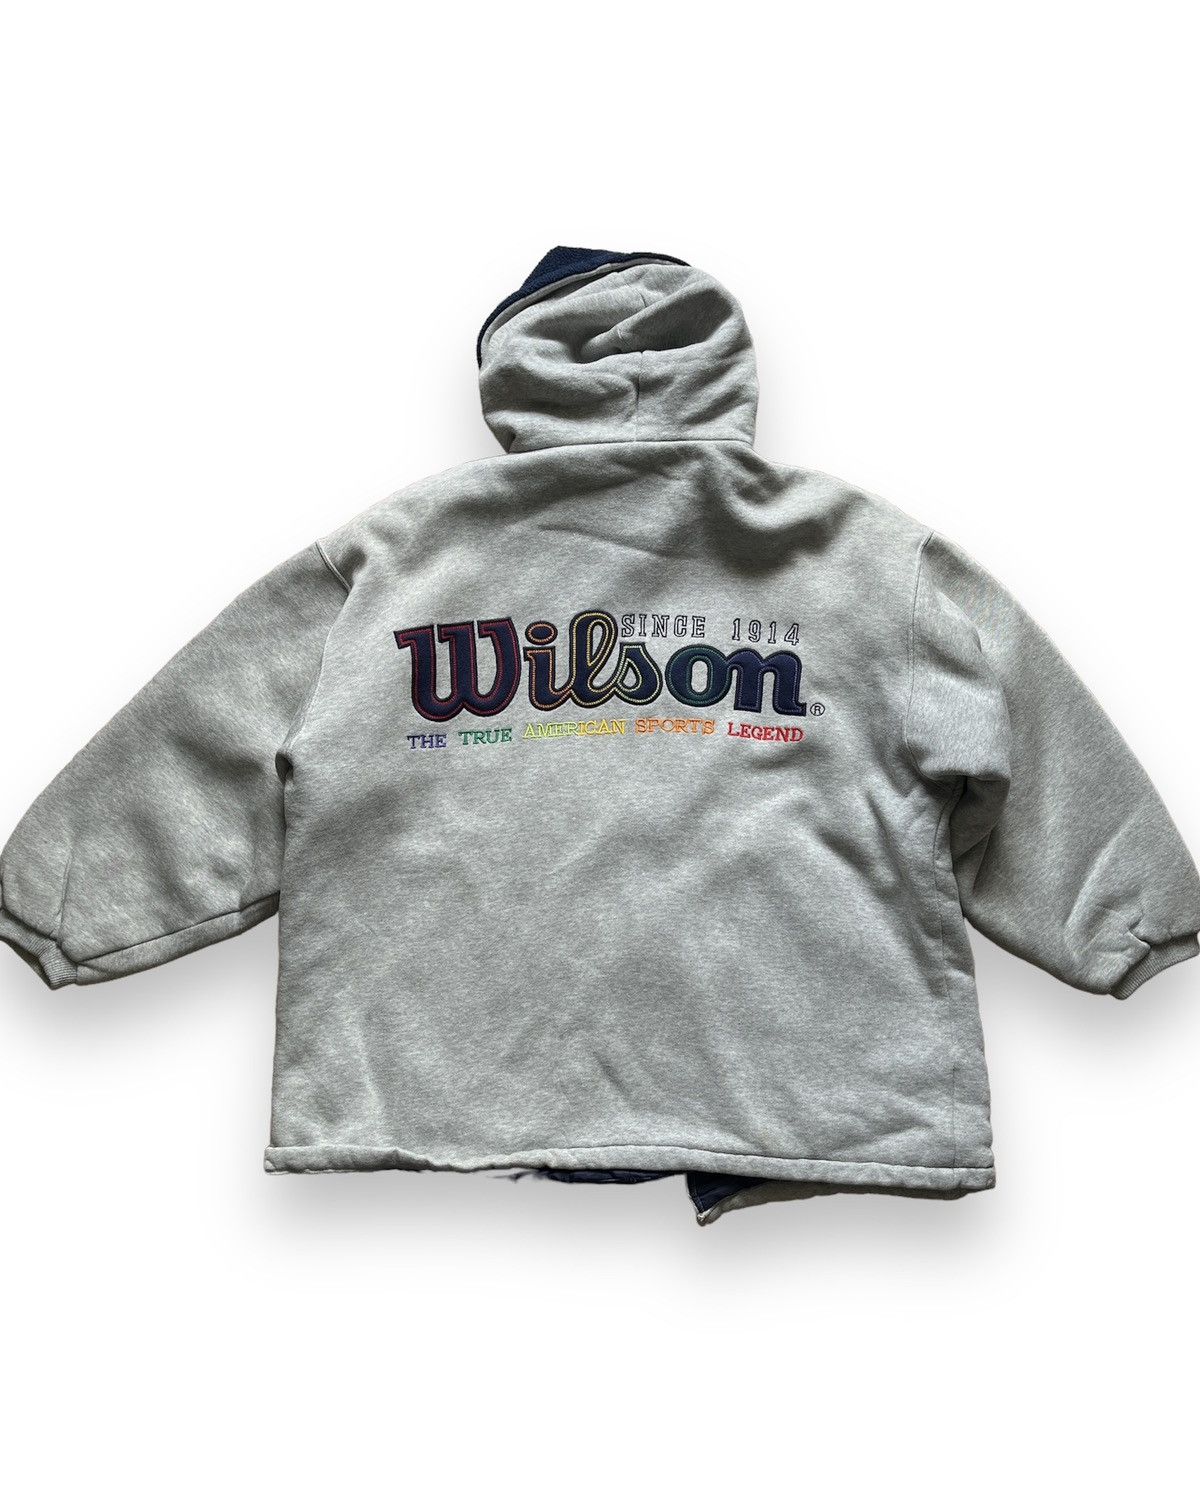 Vintage - Big Spellout Wilson Sweatshirts Hoodie - 16